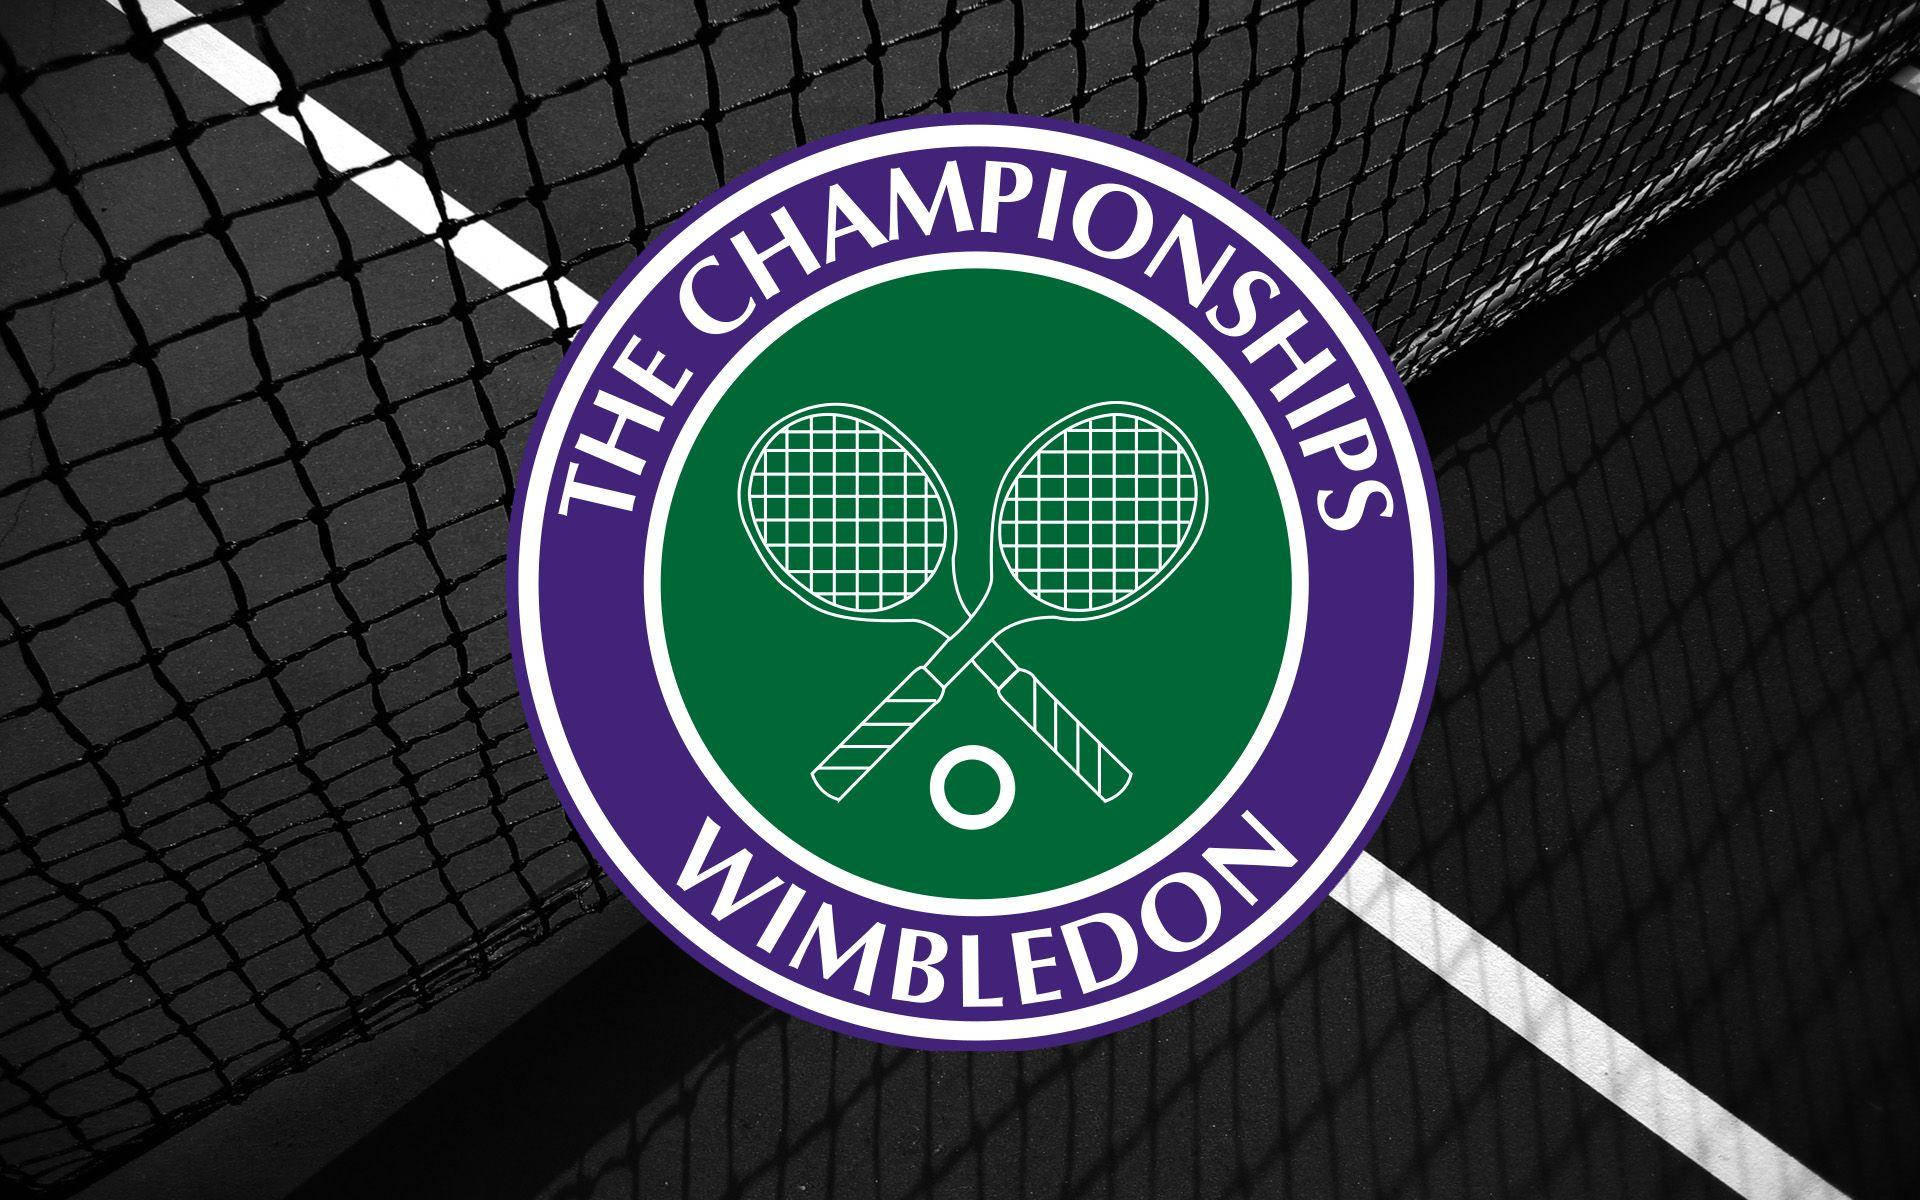 Wimbledon Digitalt Rendering-logo Wallpaper